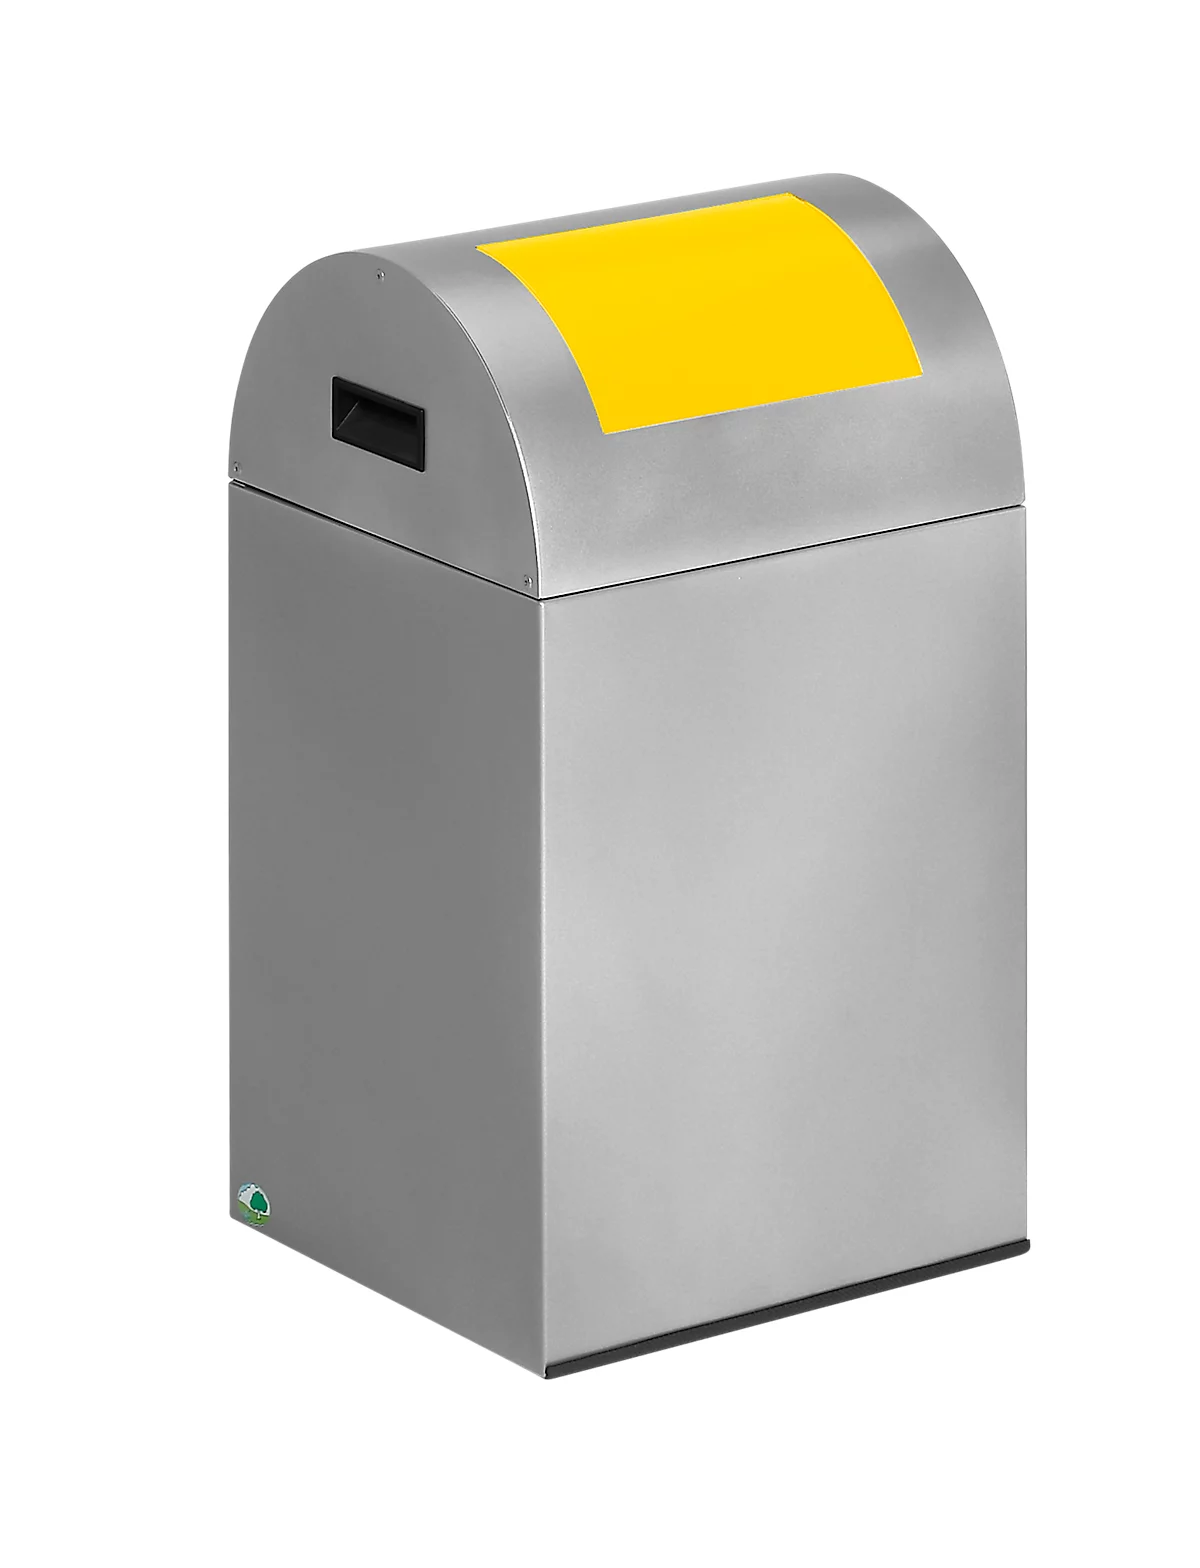 Selbstlöschende Wertstoff-Abfallsammler 40R, silber/gelb